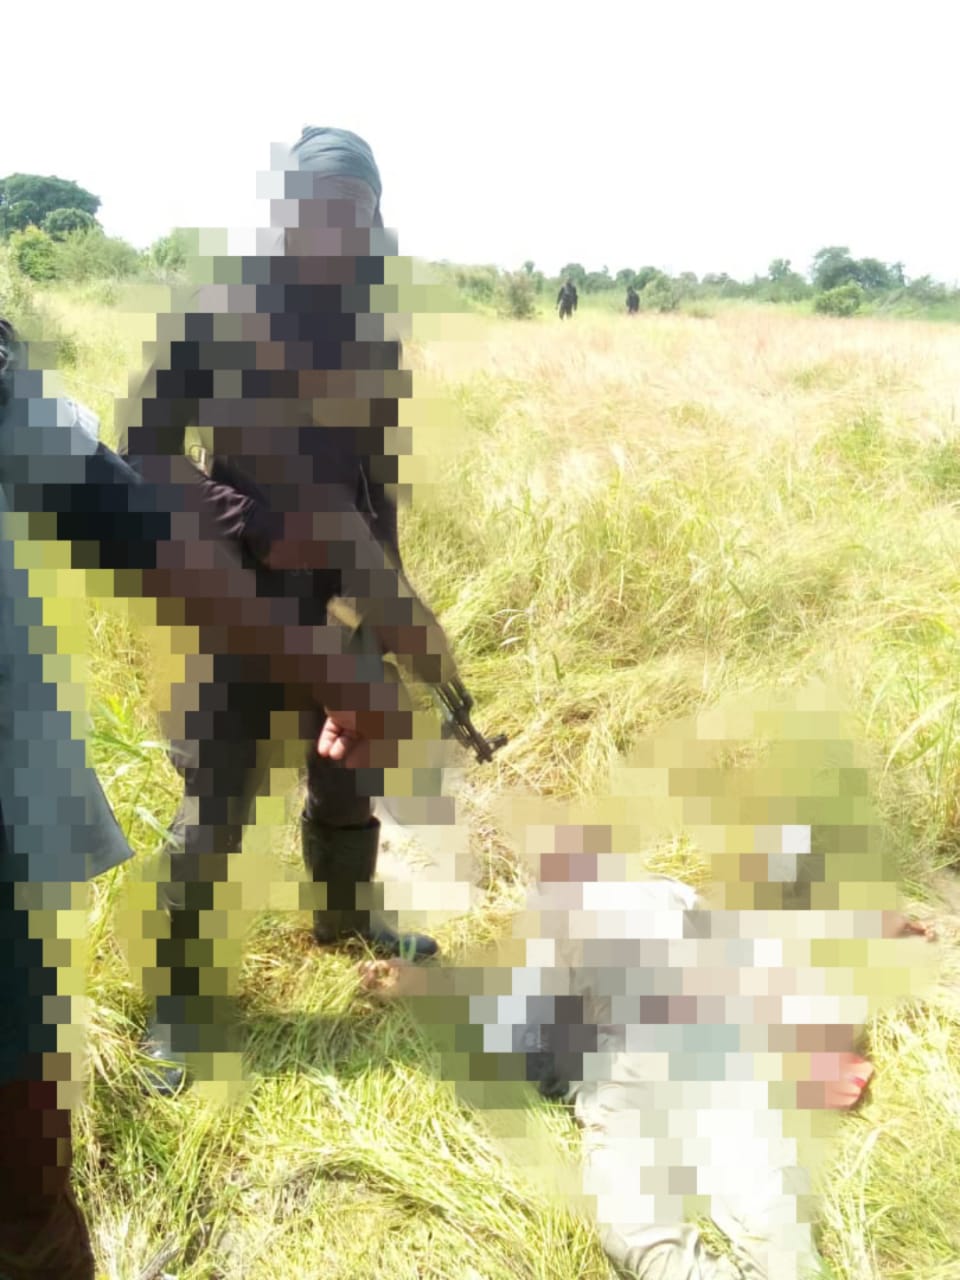 Nigerian troops ambush Boko Haram, Kills 7 in Borno